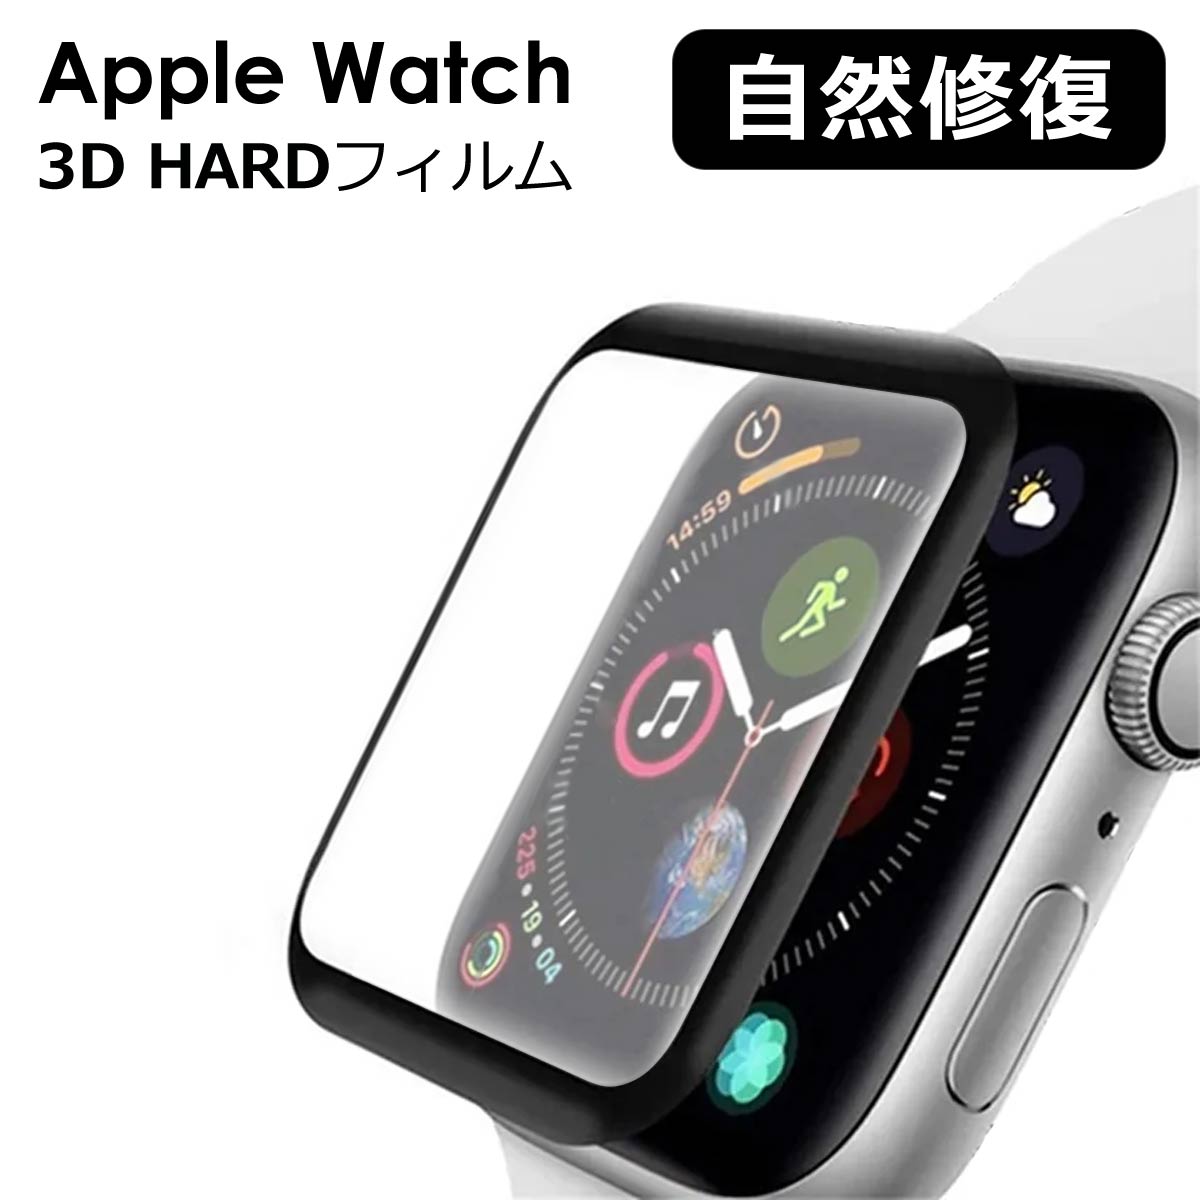 休み アップルウォッチ フィルム apple watch カバー 3D ハードフィルム applewatch 45mm 41mm 49mm 保護